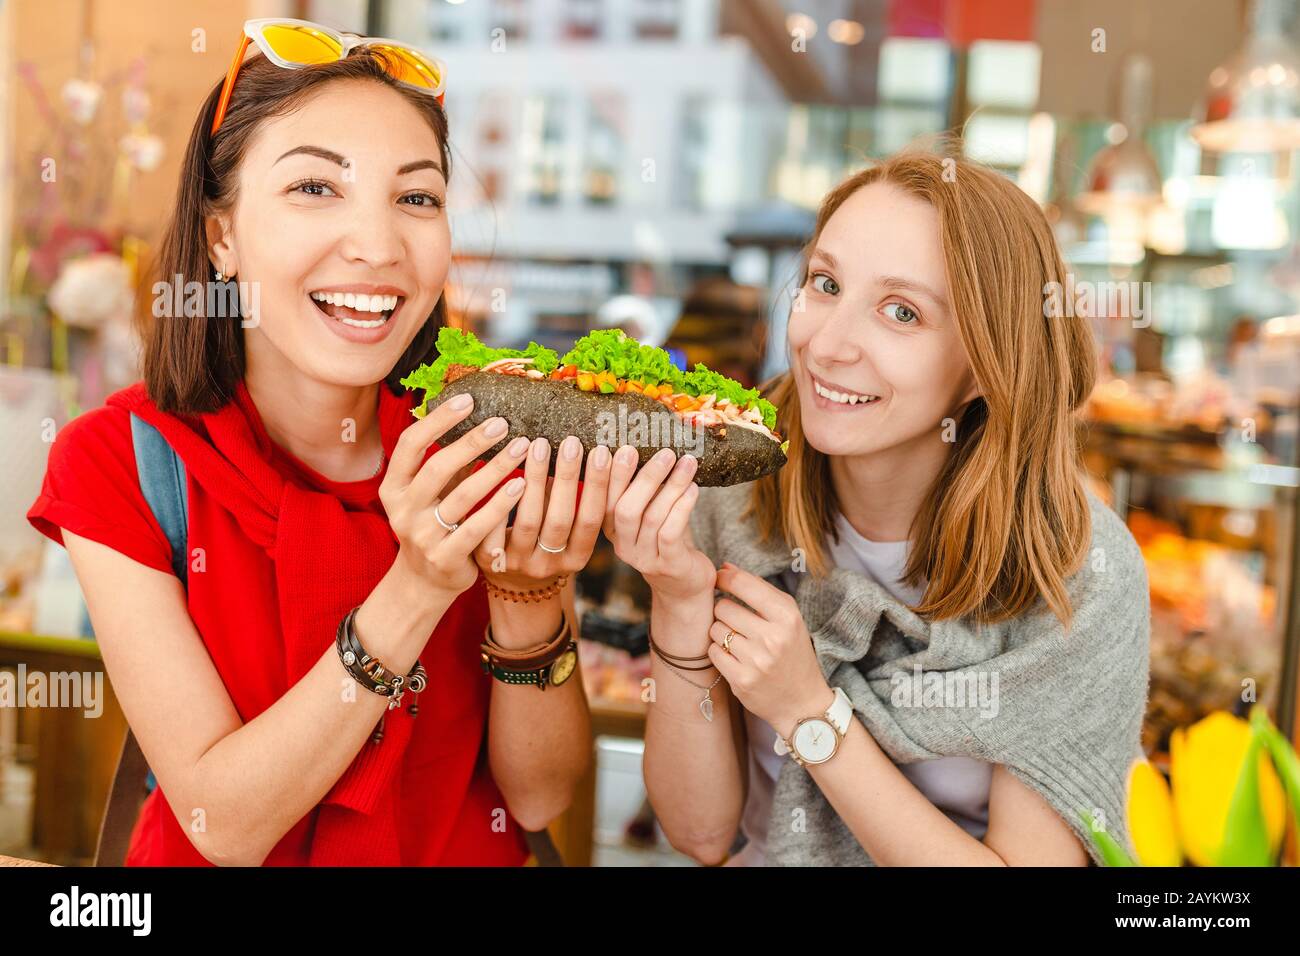 Des amis multiraciaux et gaies mangeant un sandwich et s'amuser dans un café Banque D'Images